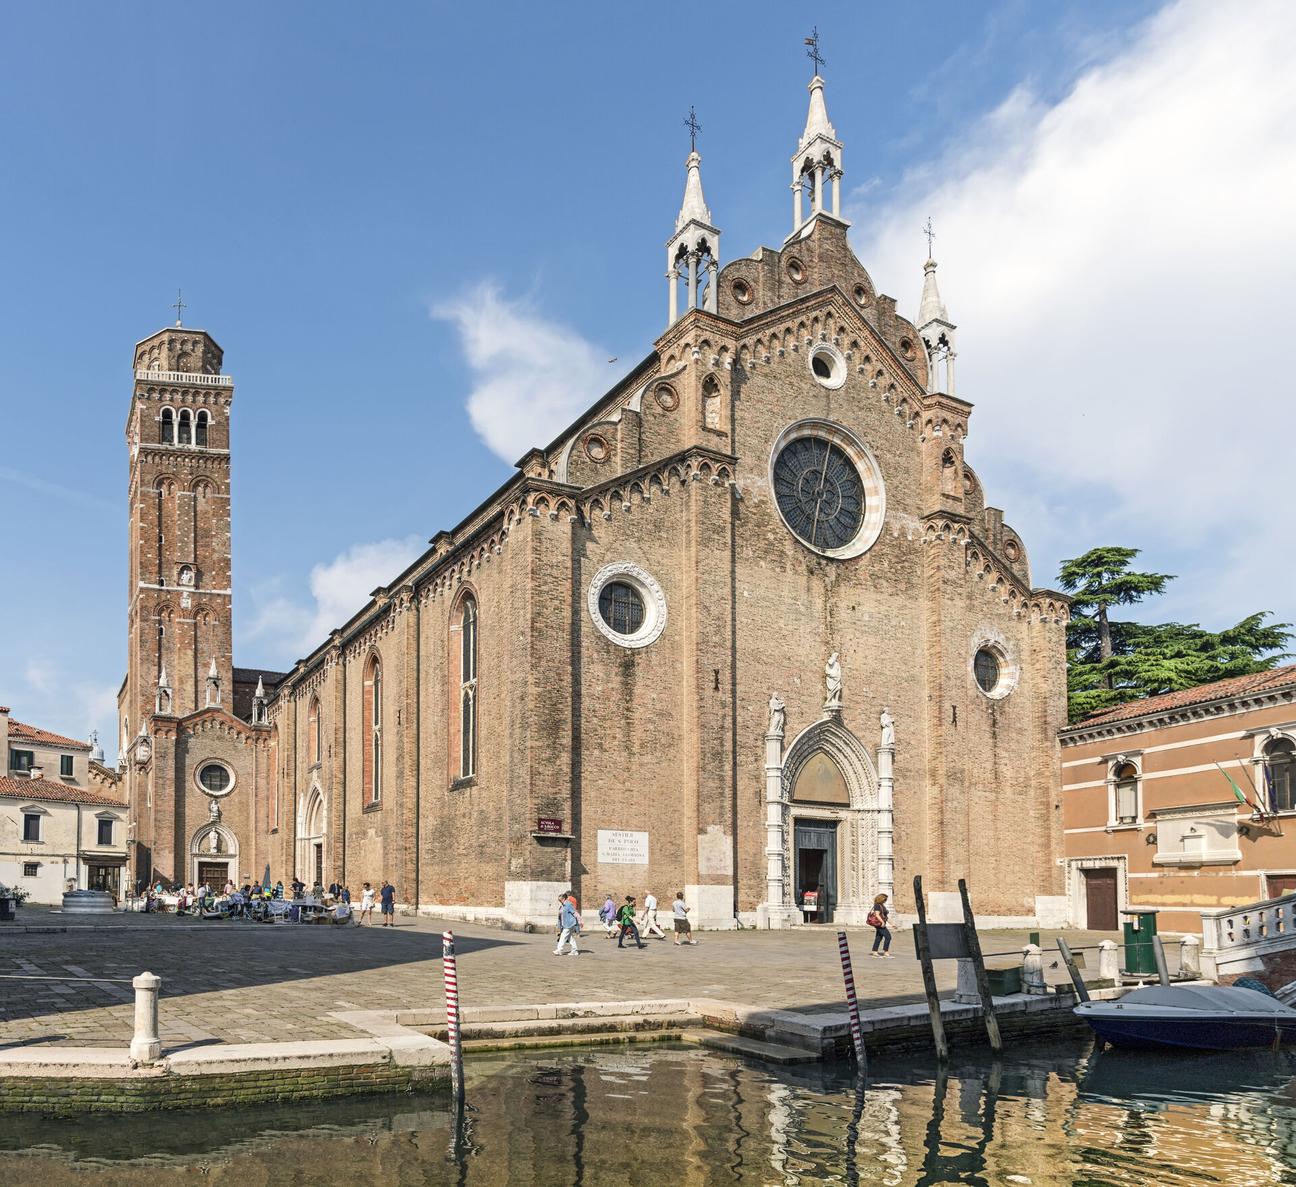 Basilica S. Maria Gloriosa dei Frari